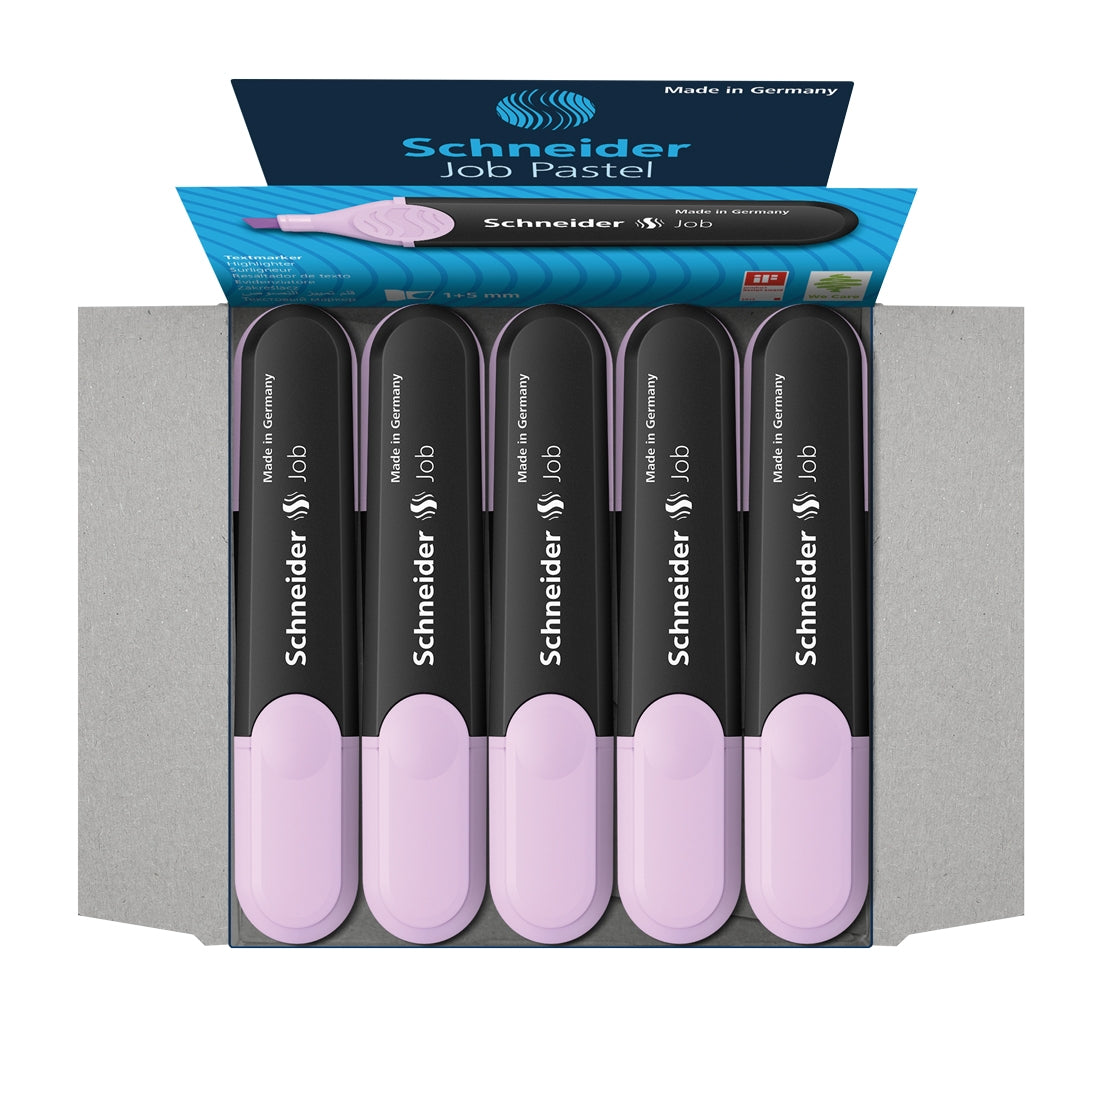 Job Pastel Highlighters, Box of 10un.#colour_hl-lavender